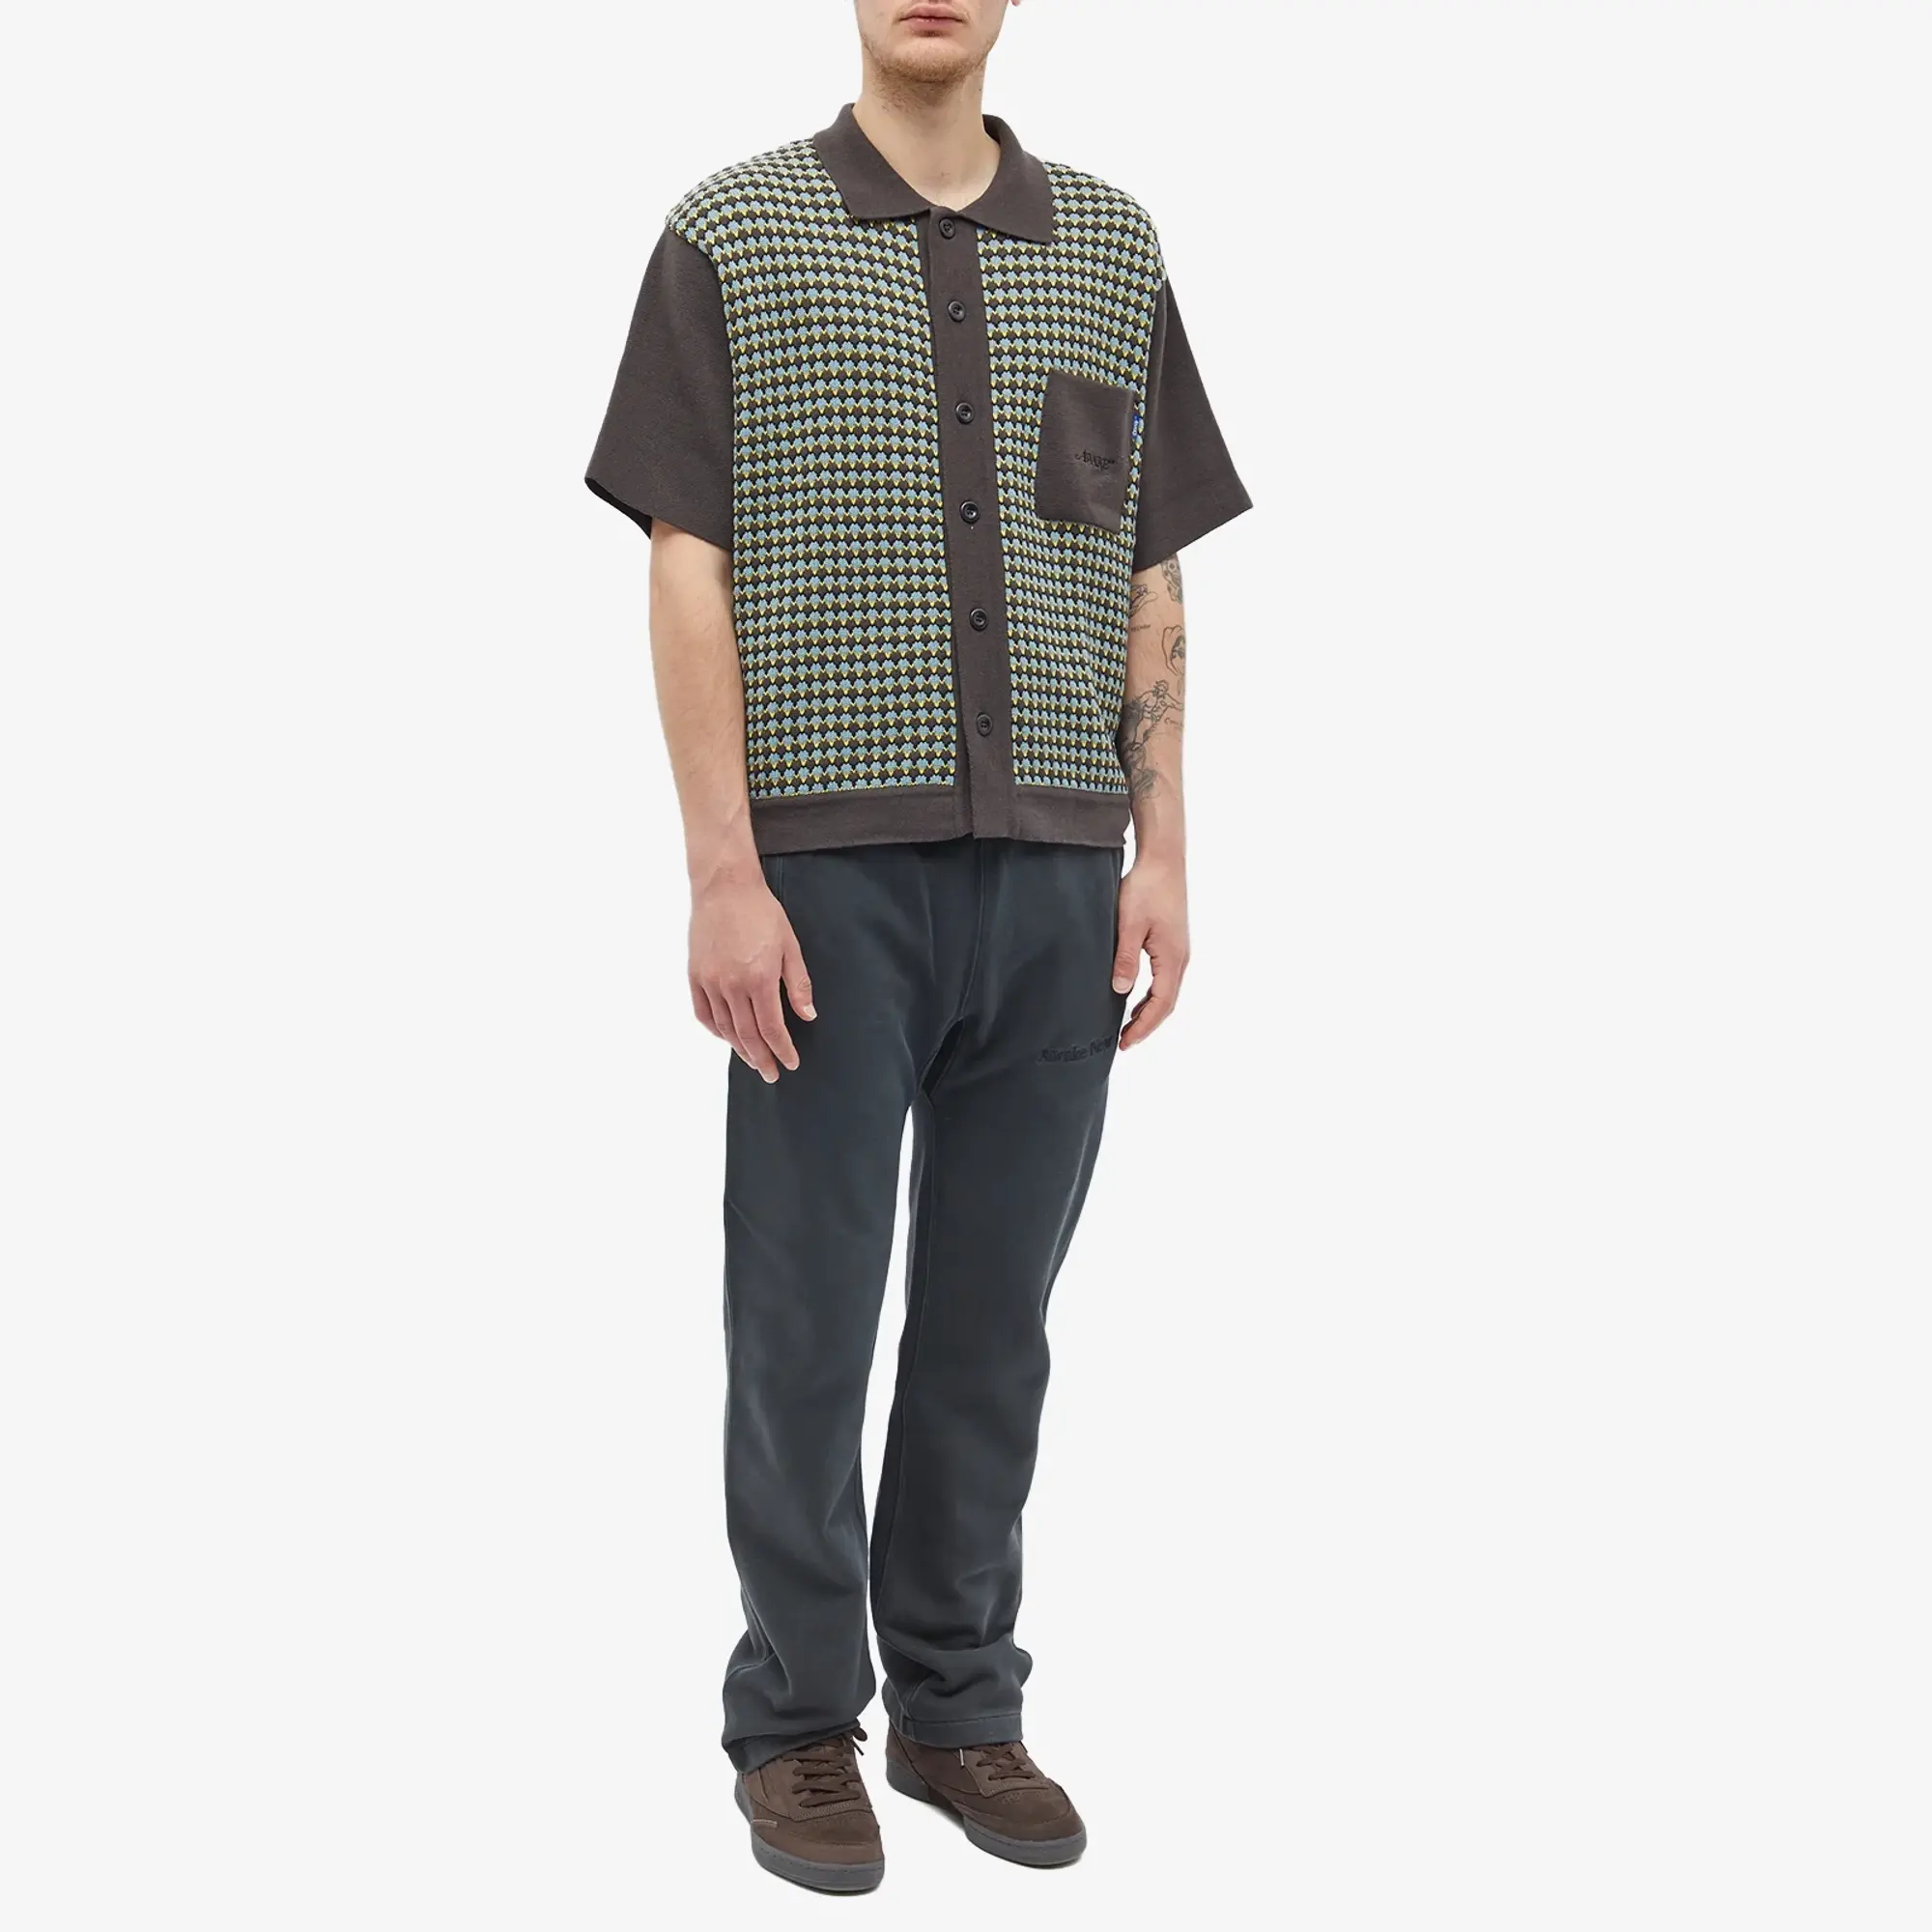 Awake NY Men's Short Sleeve Crochet Shirt Brown Multi